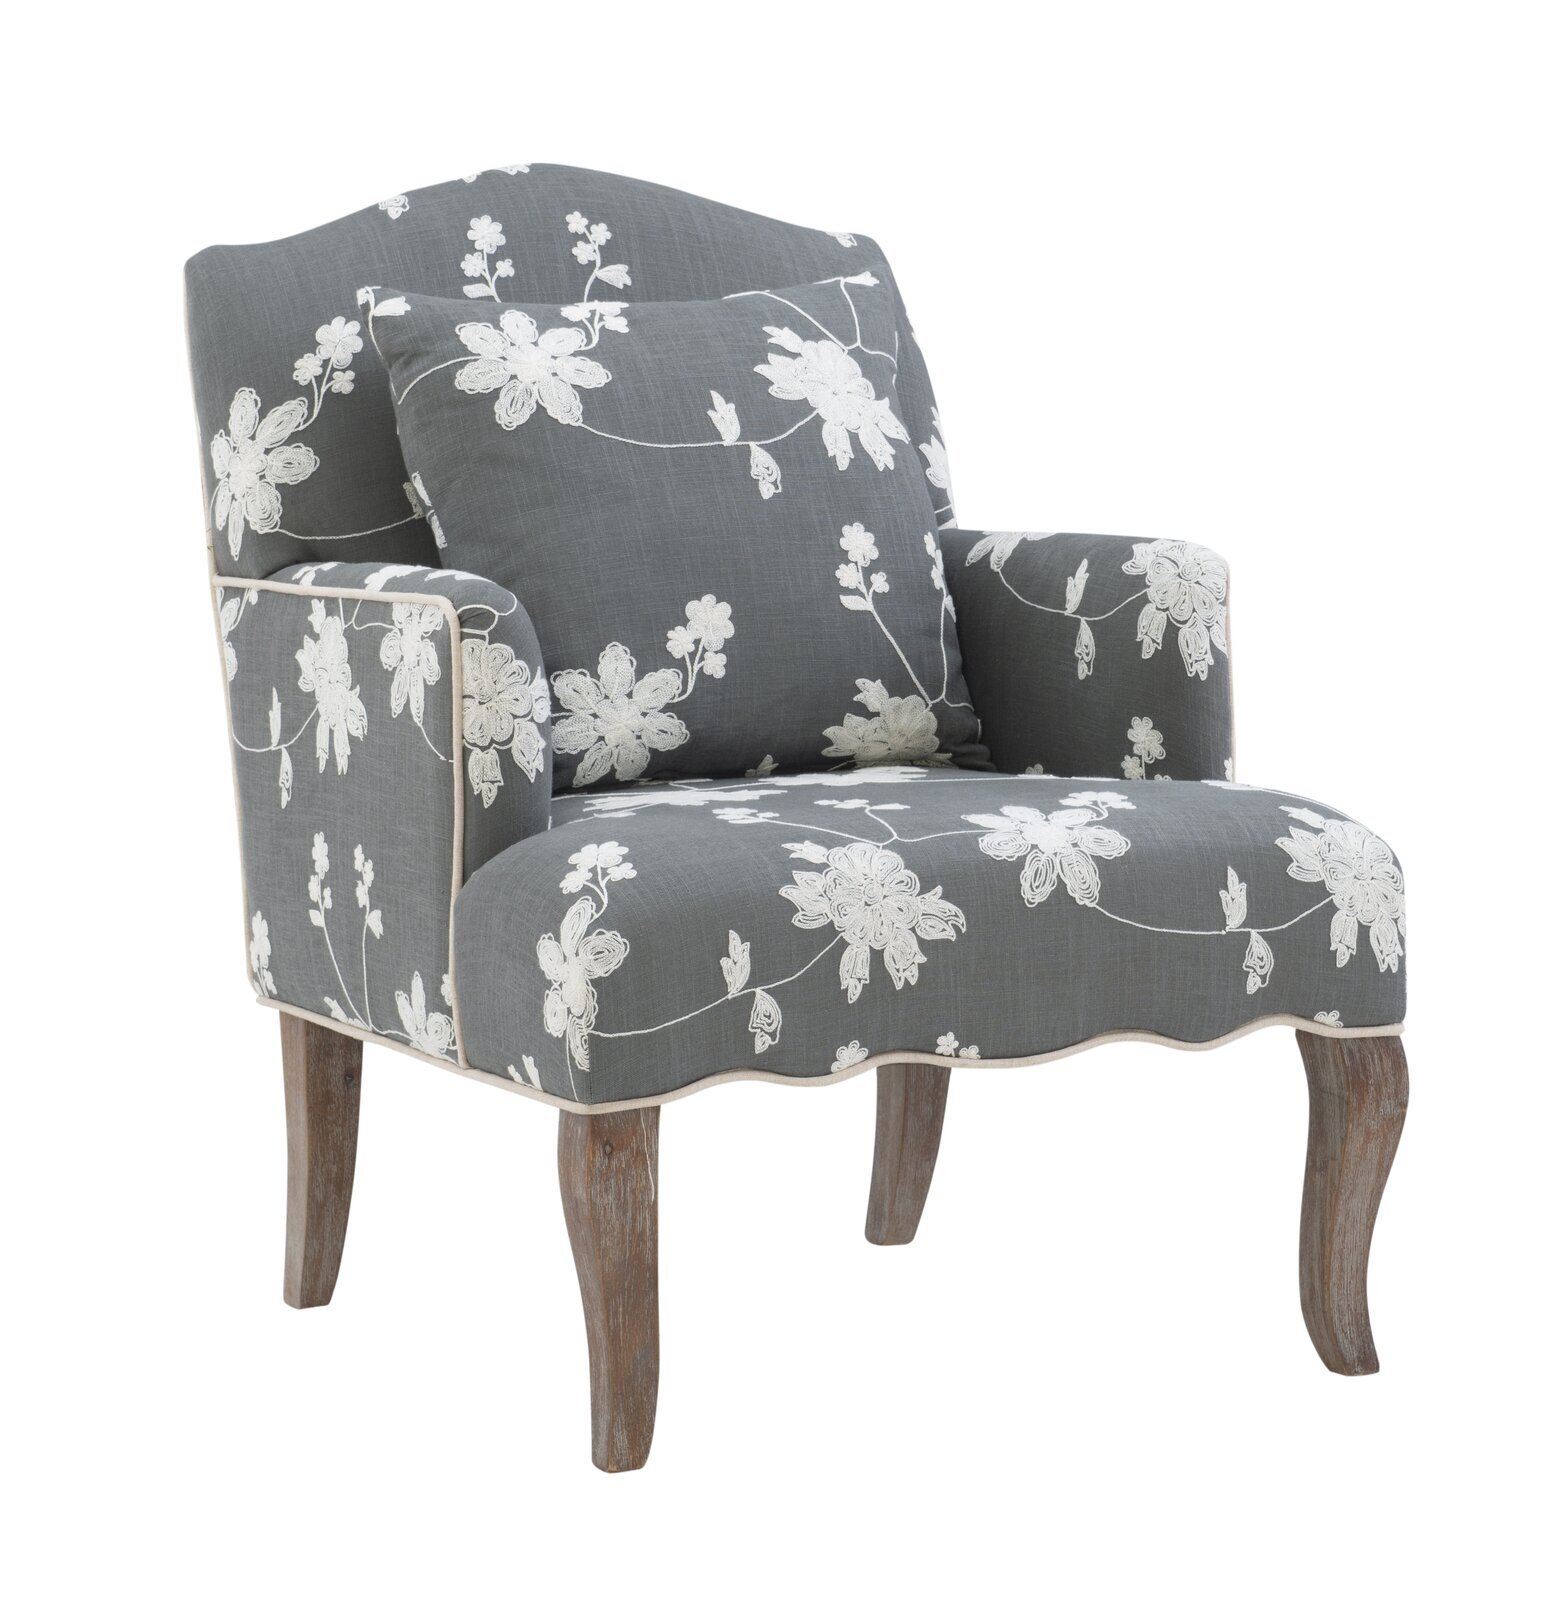 Wavy Antique Cottage Floral Sofa Chair